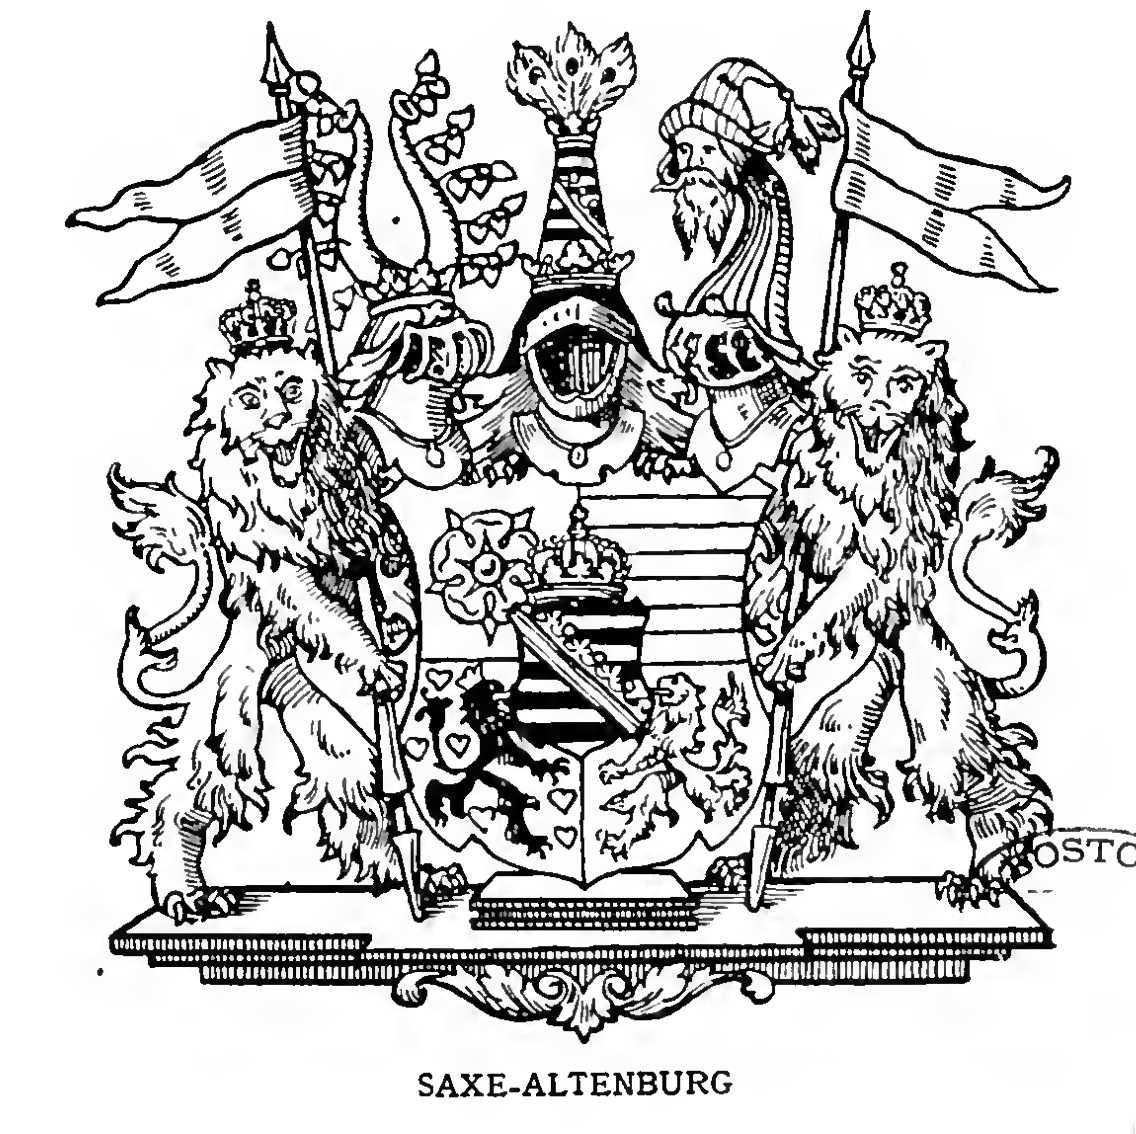 SAXE-ALTENBURG, Duchy of